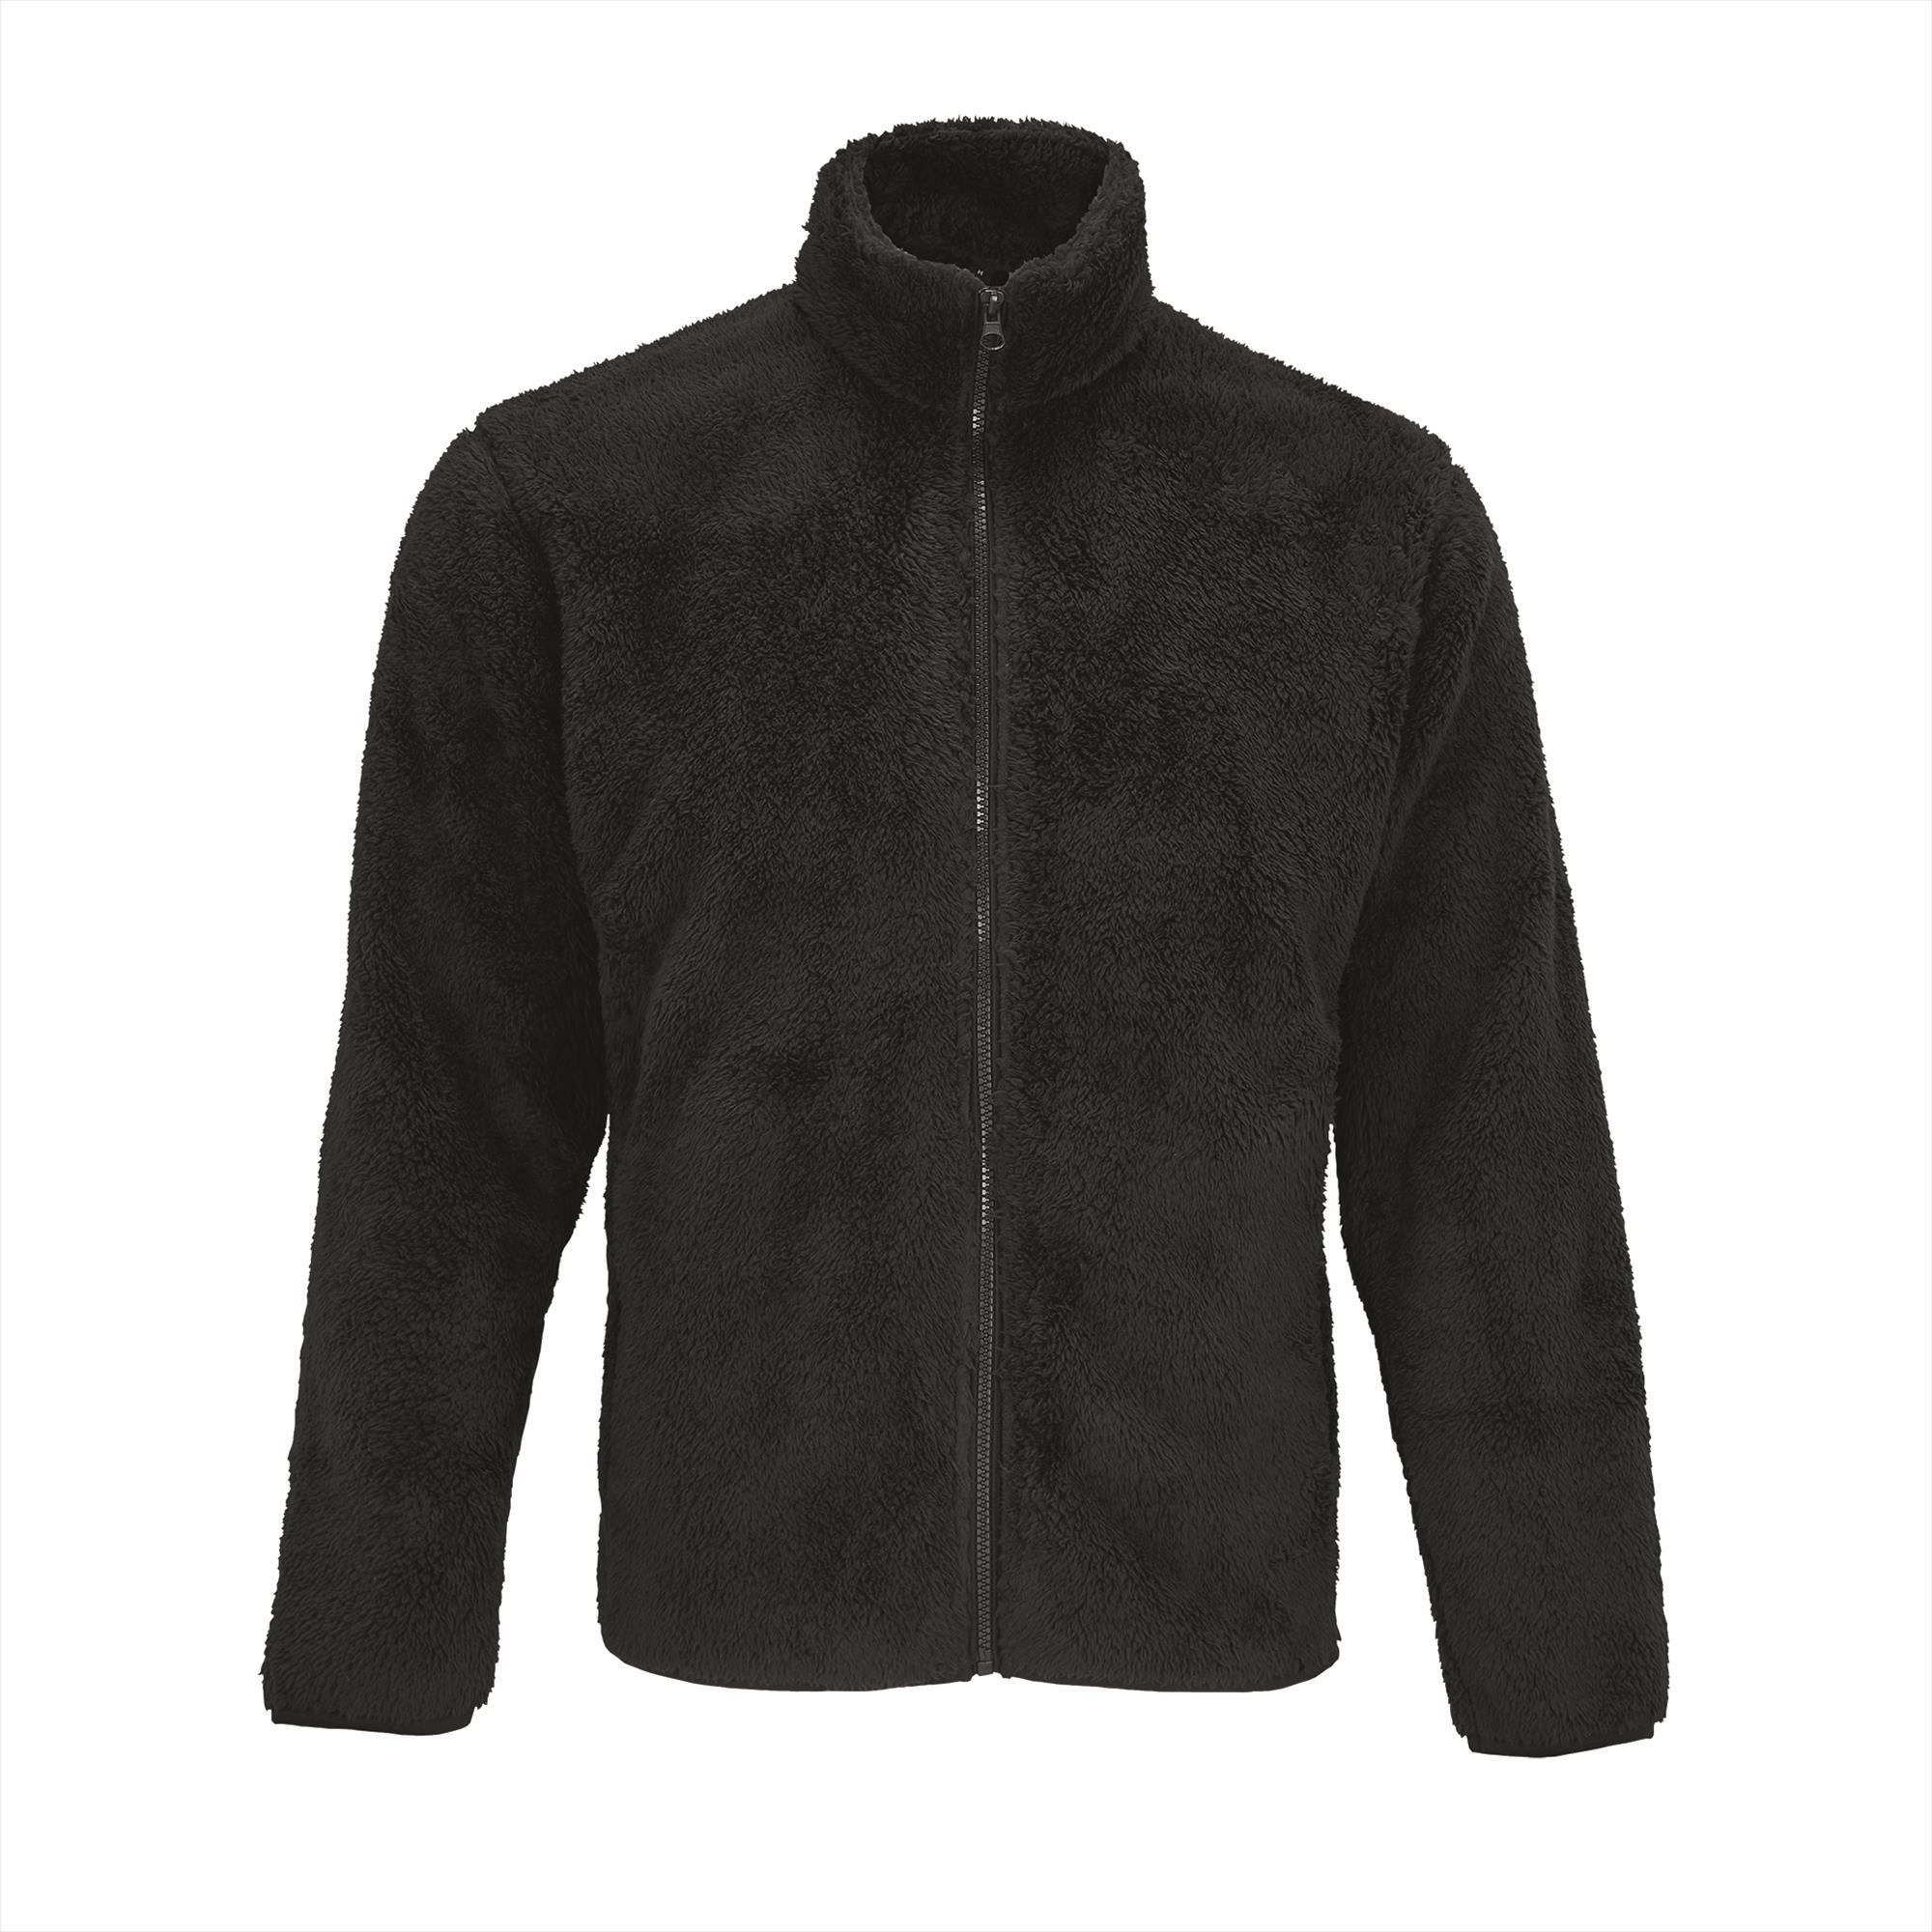 Unisex Fleece Zip Jacket carbon grijs jas